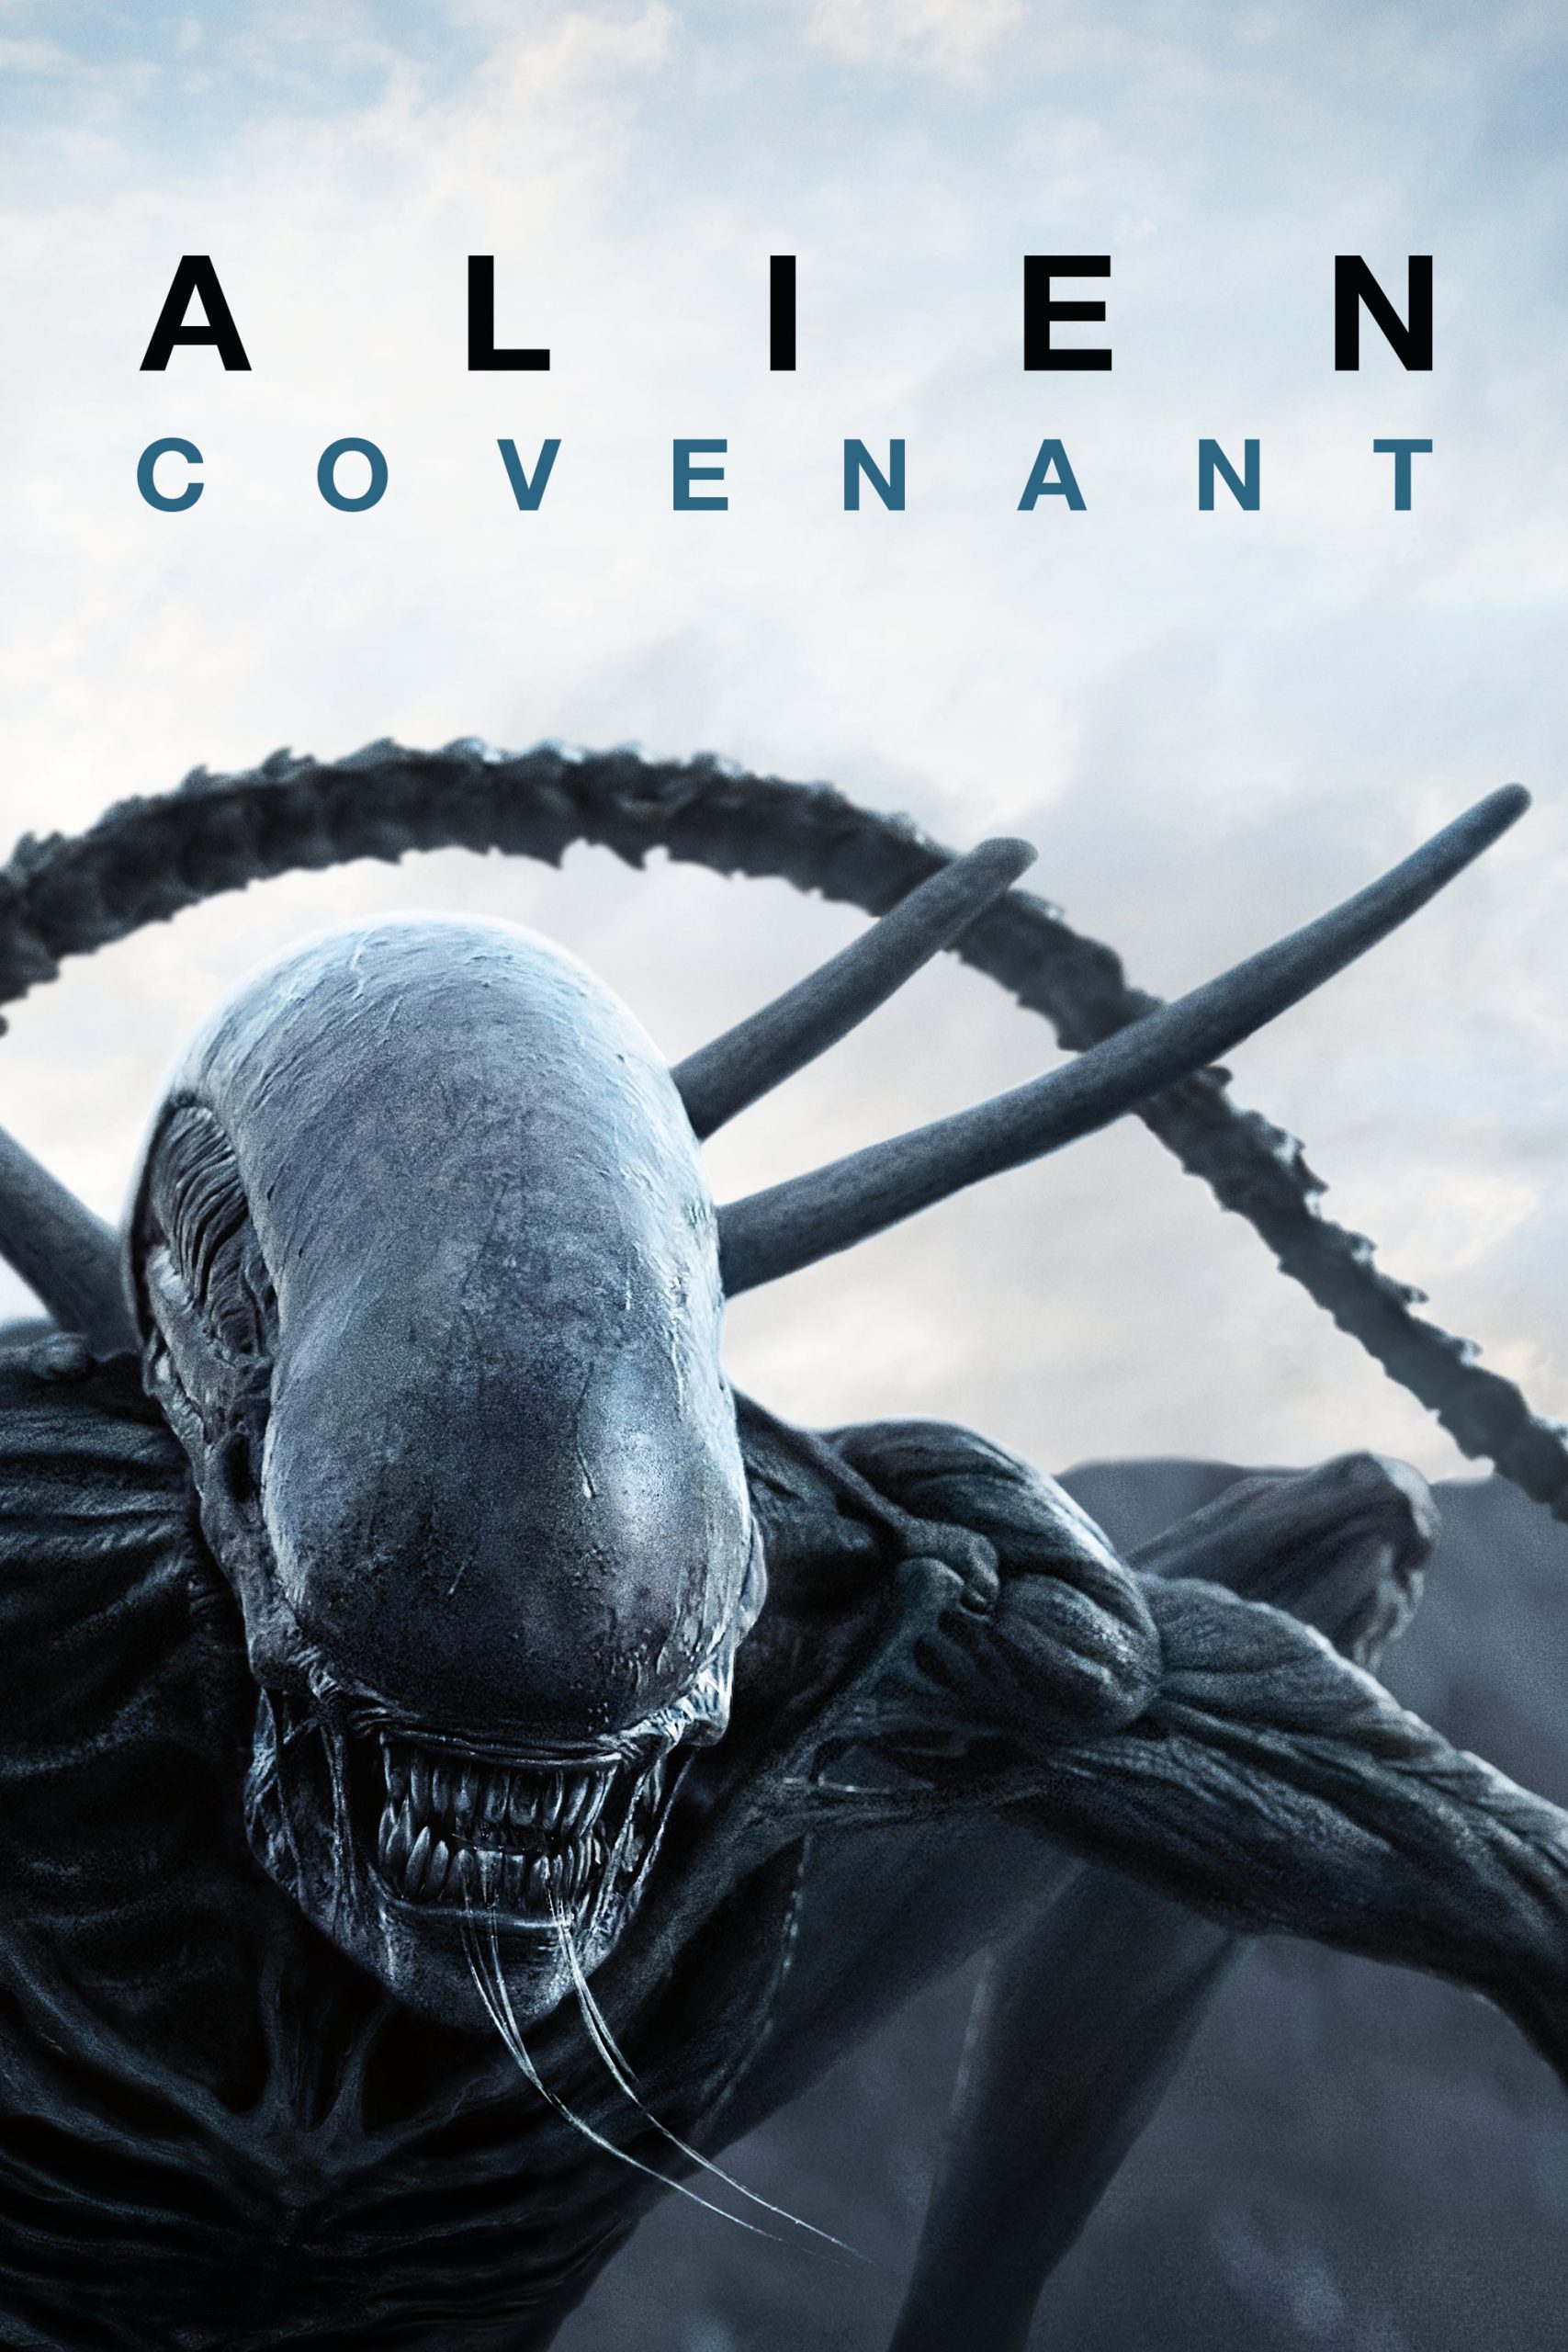 Alien: Covenant [HD] (2017)